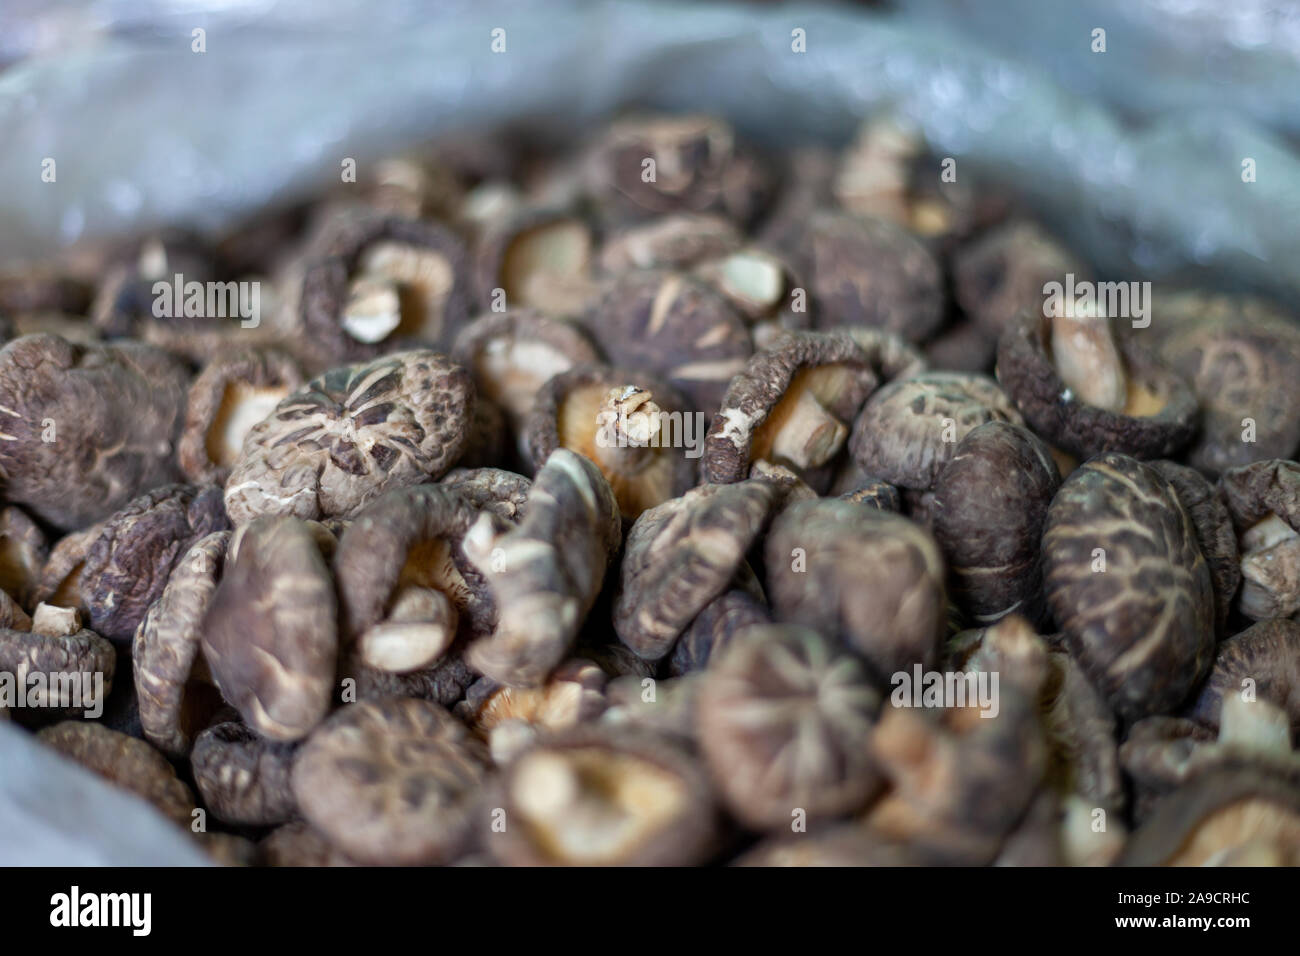 Getrocknete Shitake Pilze in einer Tasche. Dies ist eine typische Szene für die asiatischen Märkte. Verschiedene Arten von Pilzen werden angezeigt und verkauft. Stockfoto